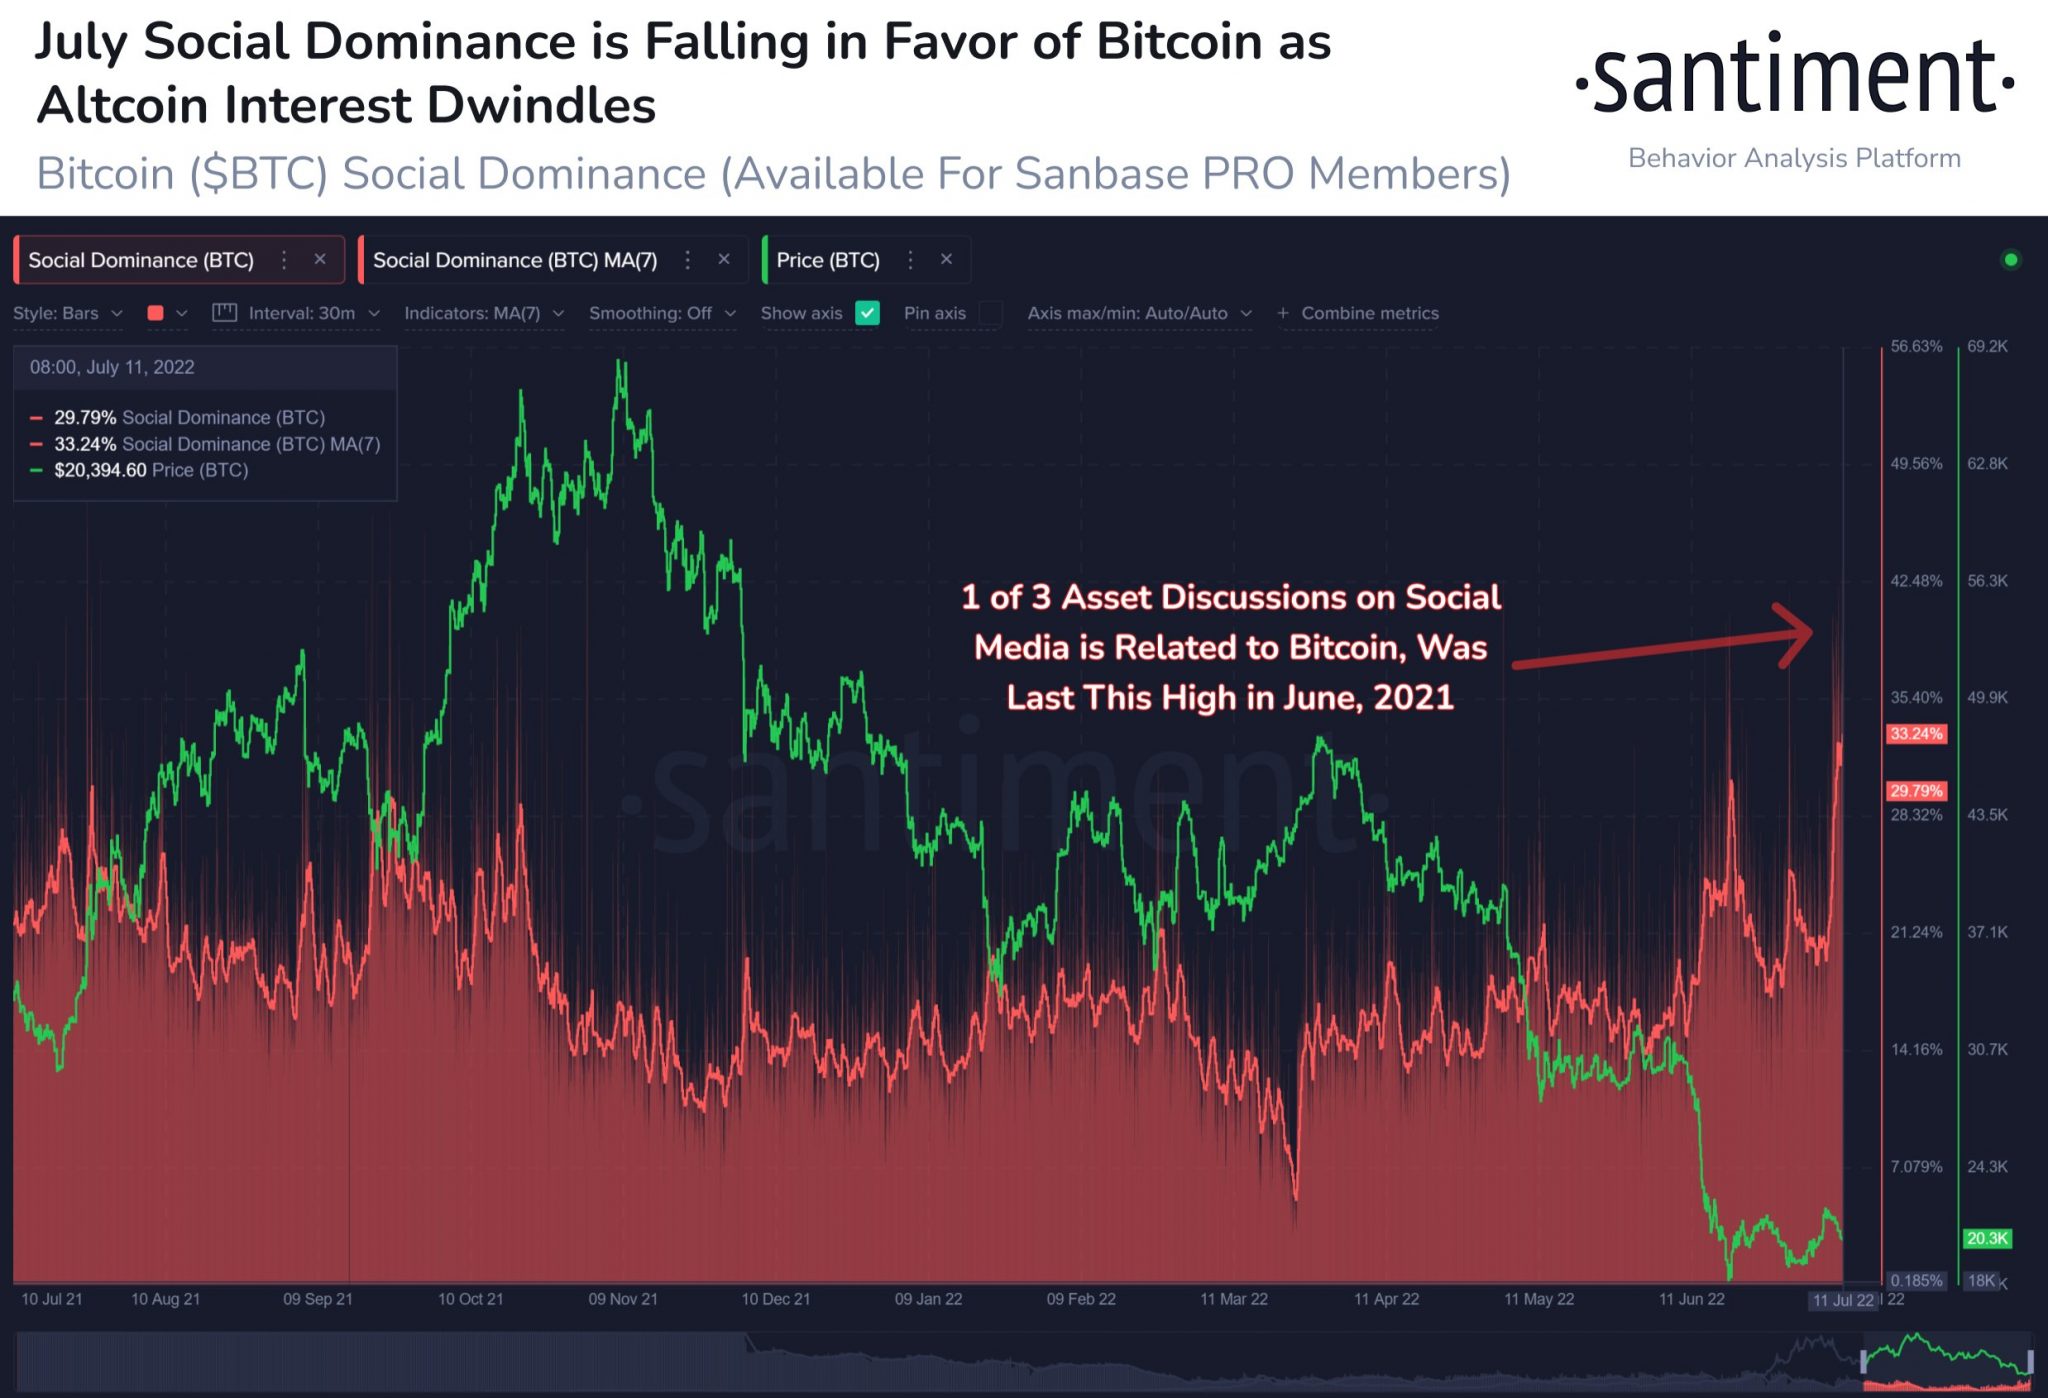 Los comerciantes de Bitcoin que buscan la validación de los toros pueden considerar esta métrica